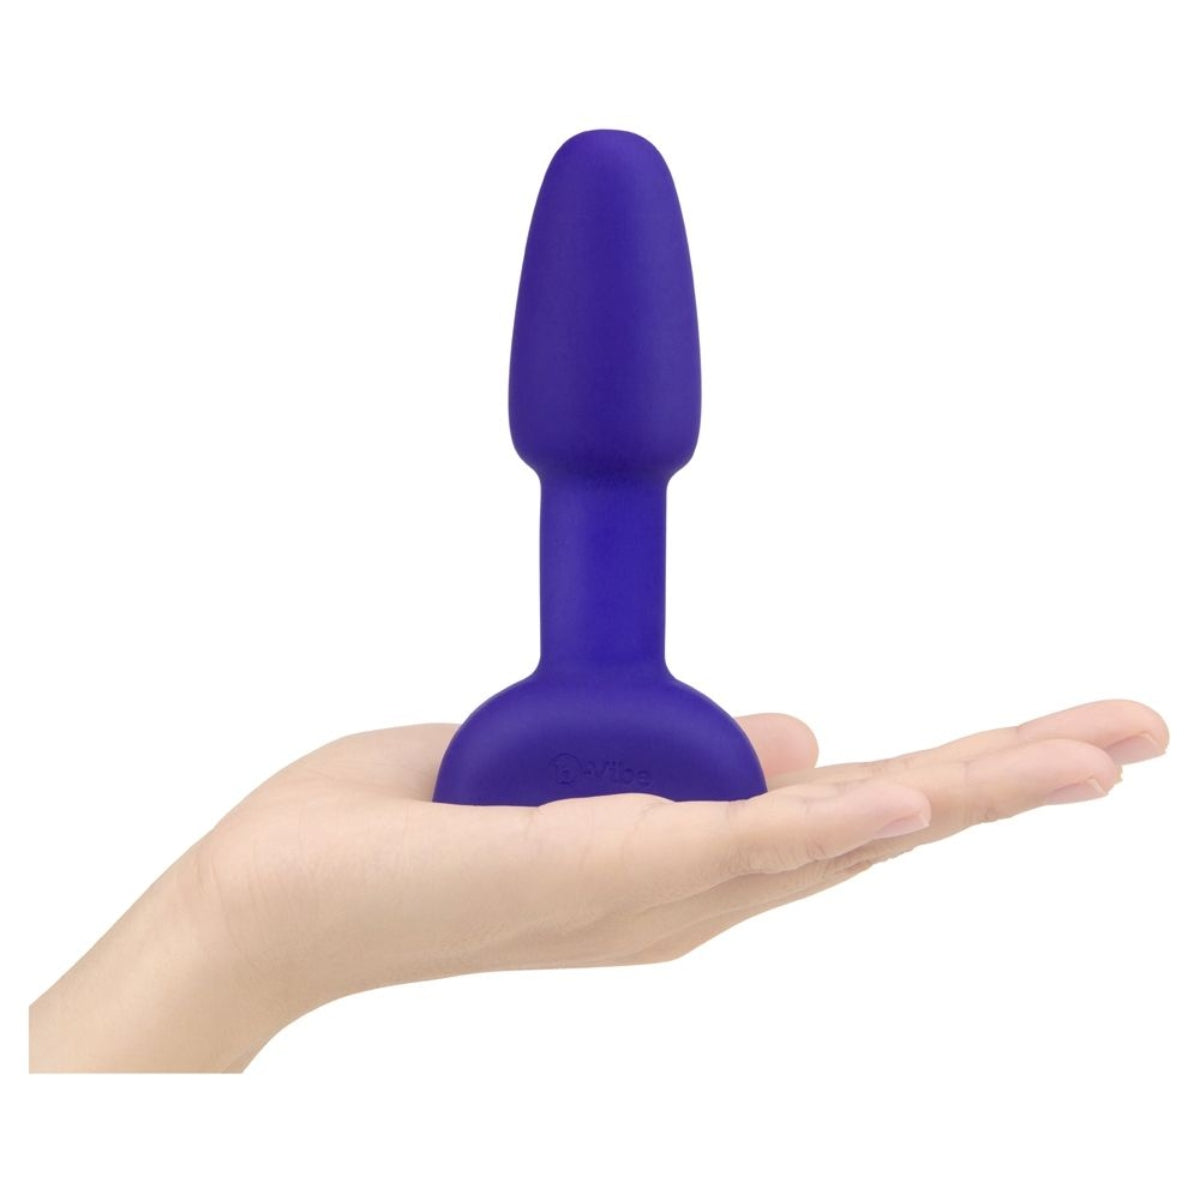 b-Vibe Rimming Petite Remote Control Vibrating Butt Plug Purple